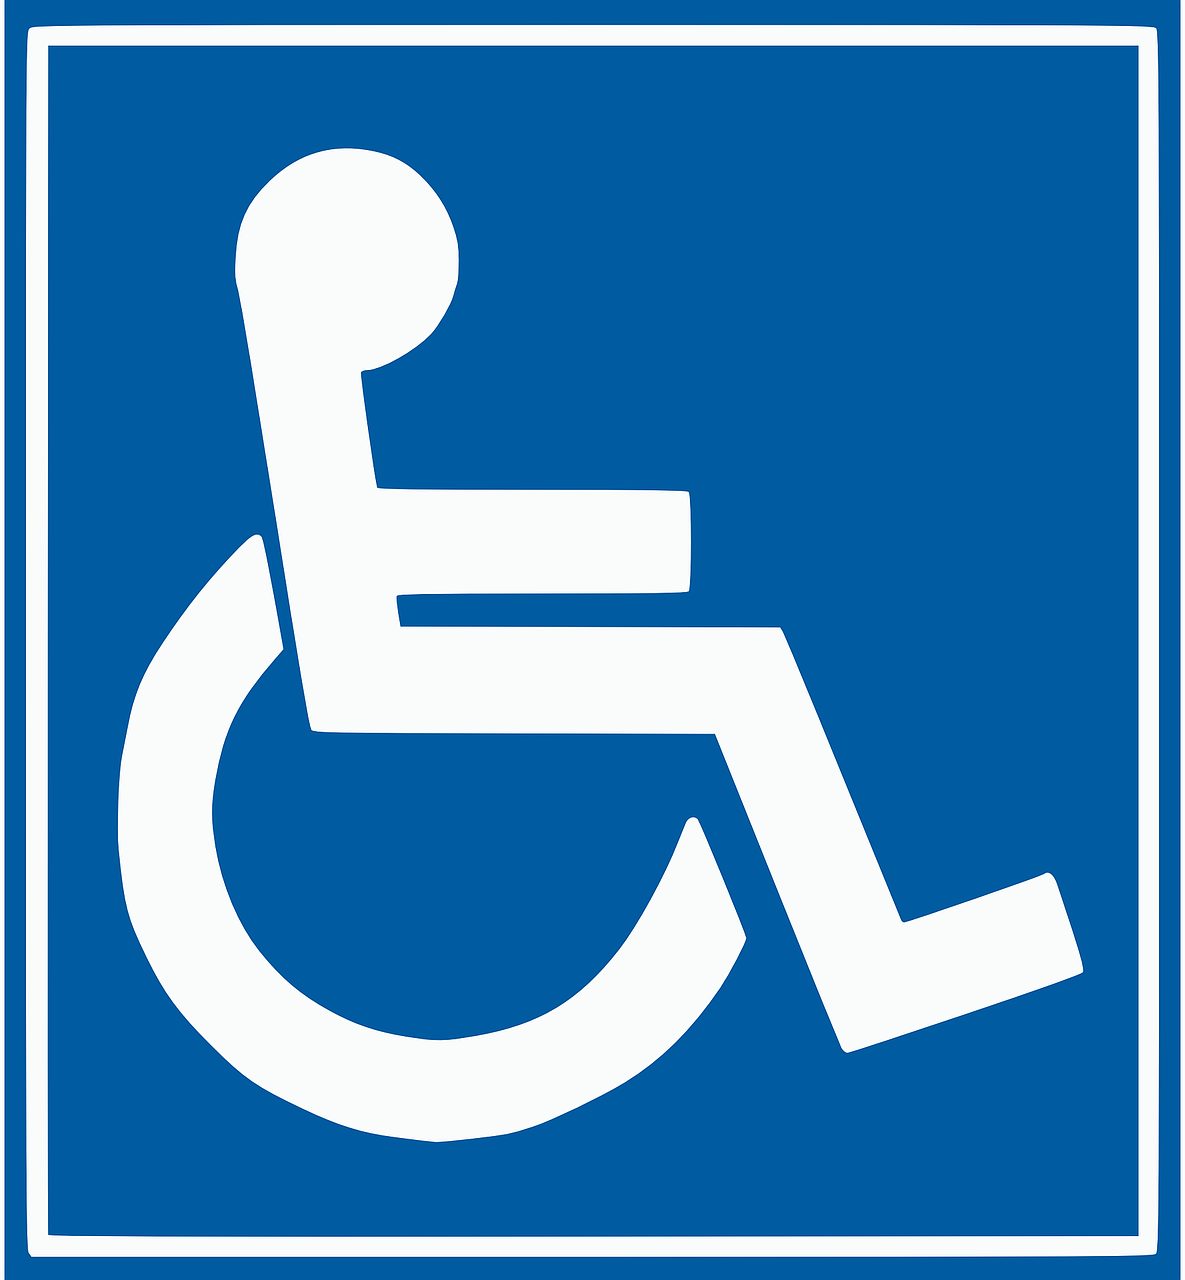 Driestroomhuis Helder Ervaren instelling gehandicaptenzorg verstandelijk gehandicapten